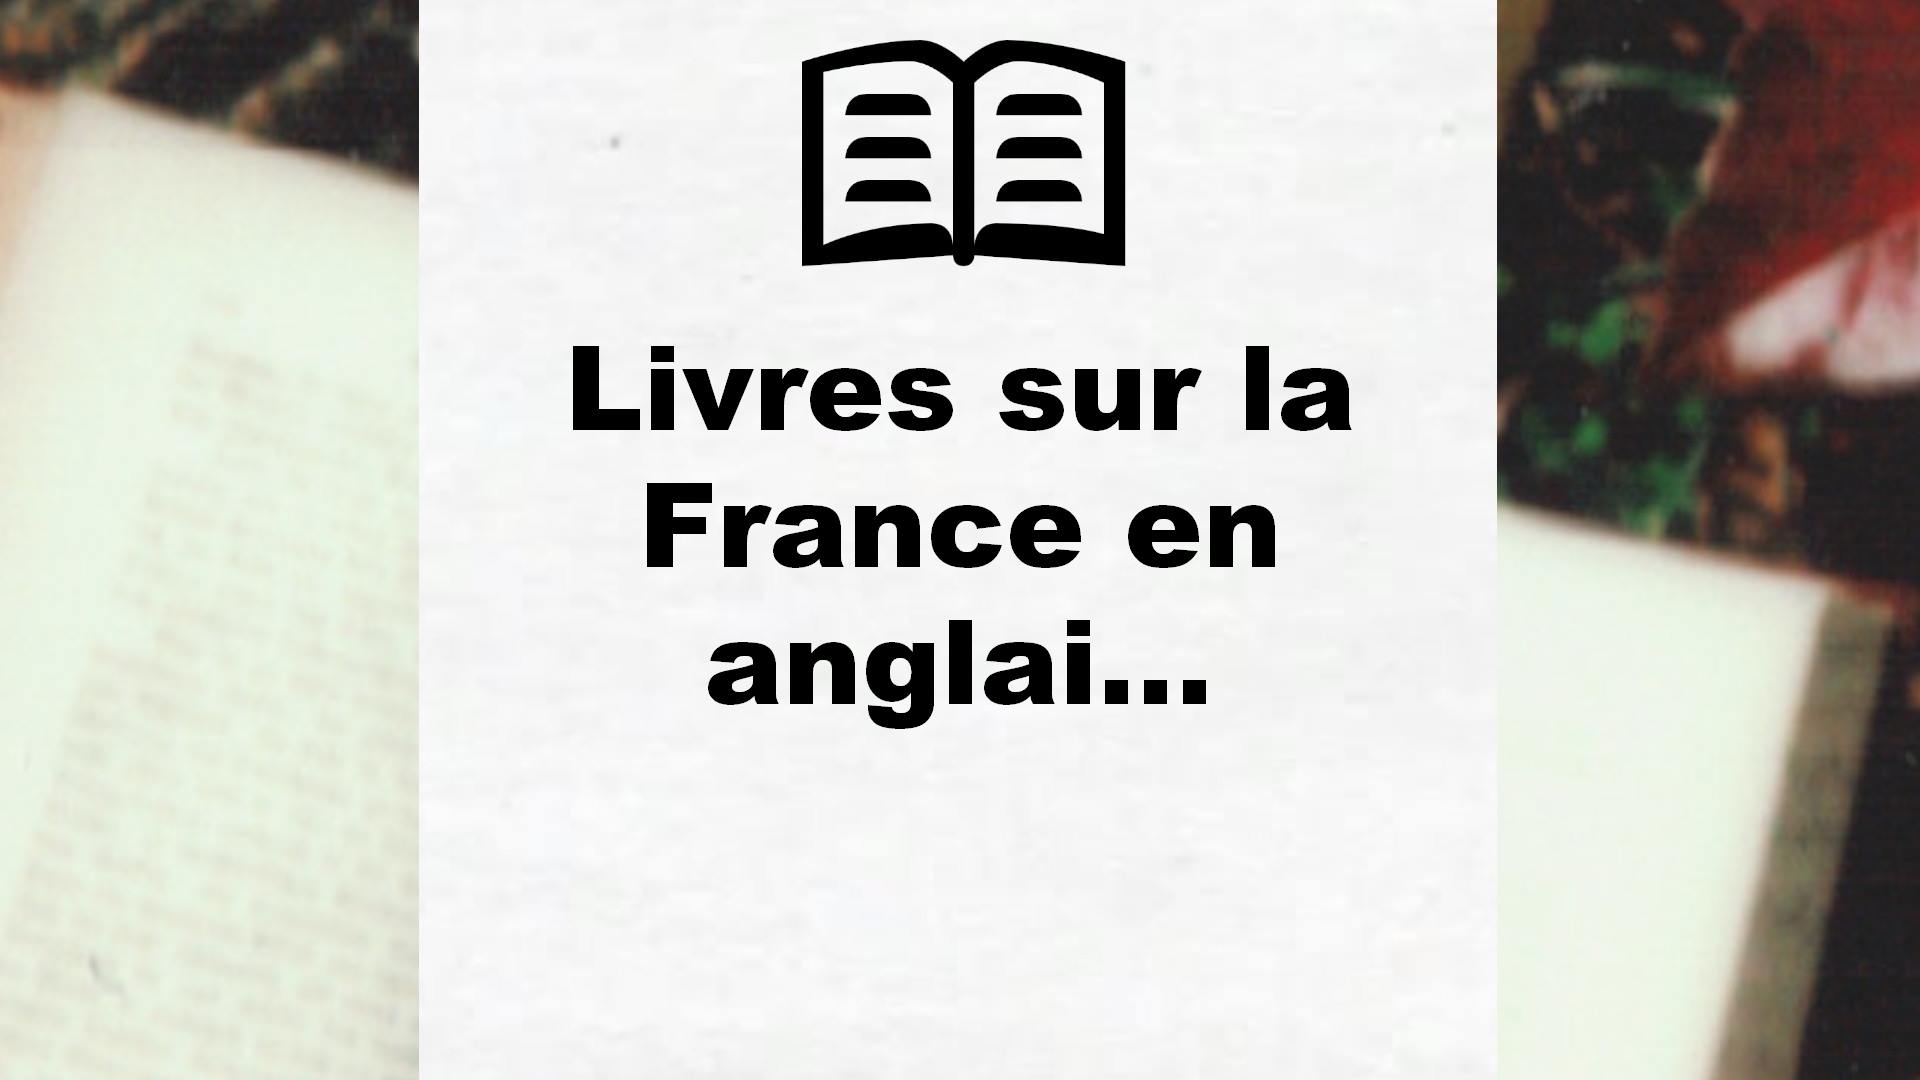 Livres sur la France en anglais